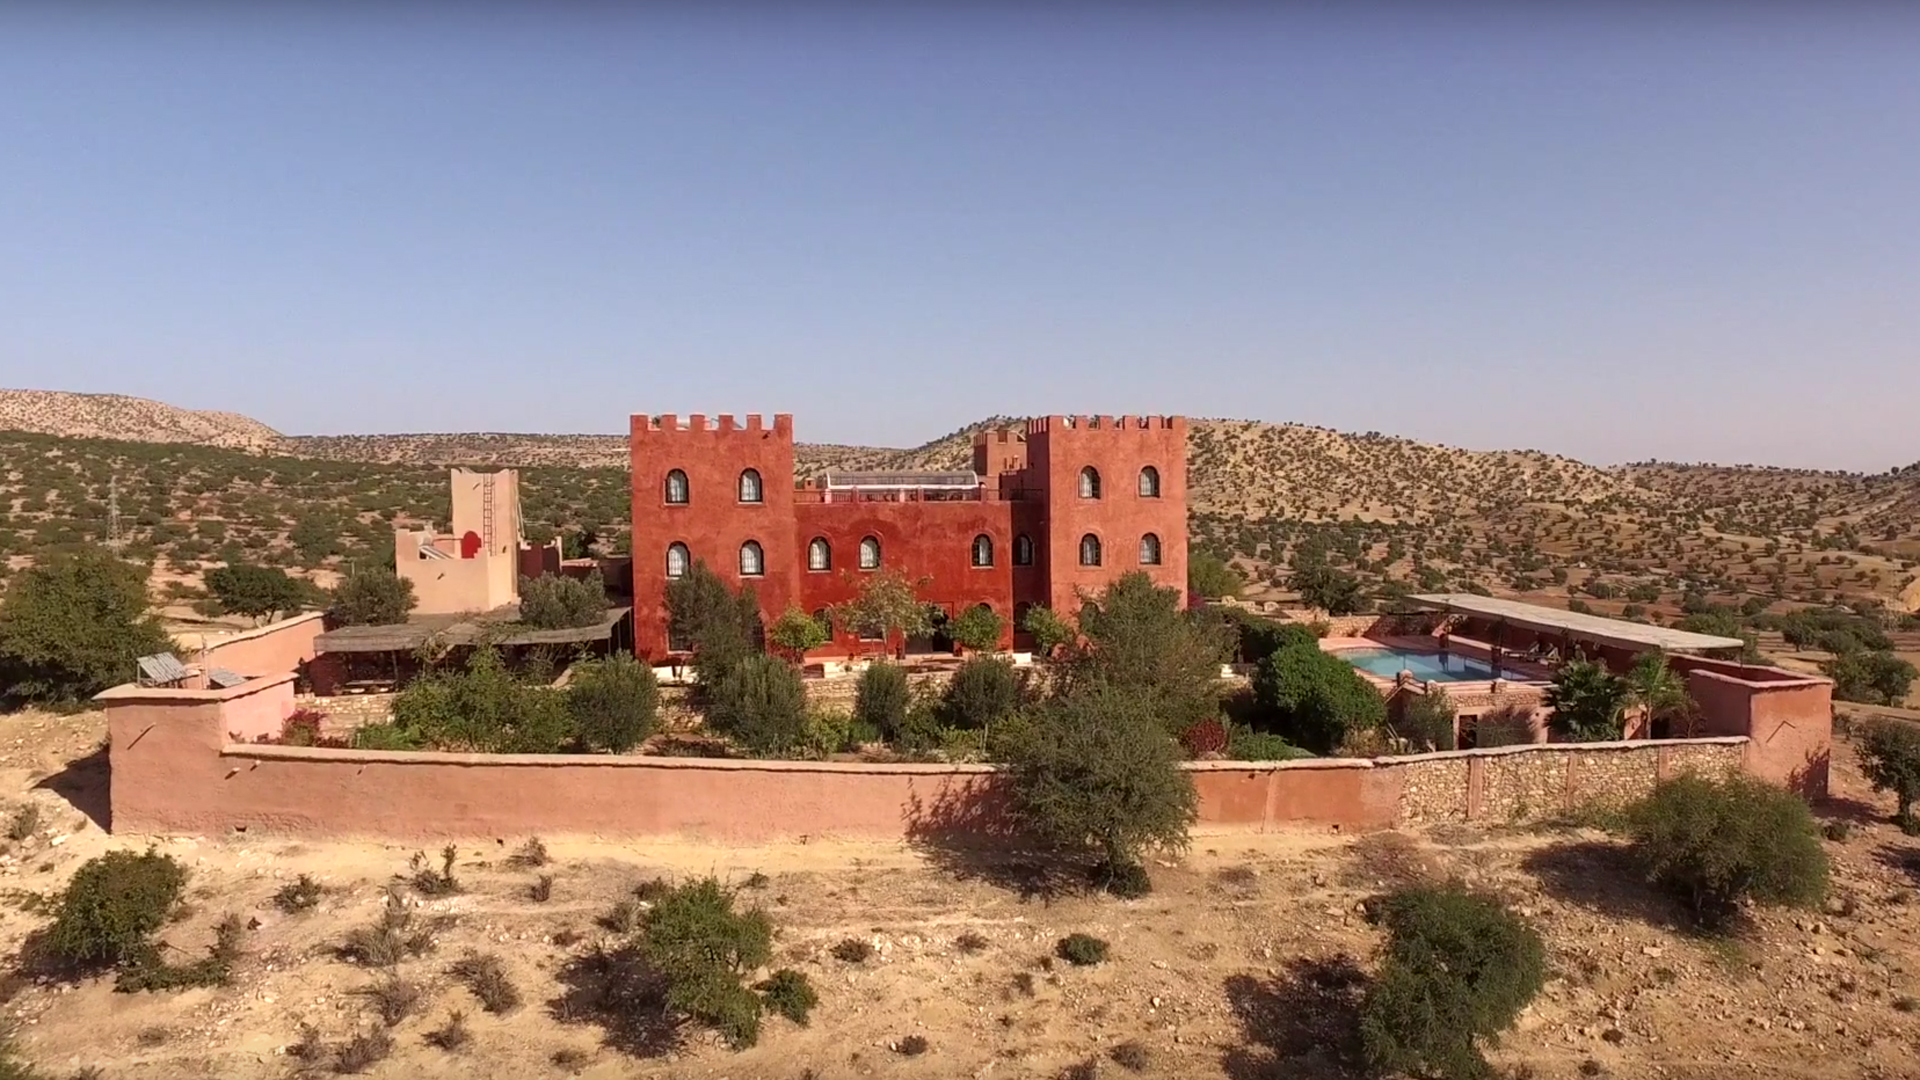 Standbild aus dem Video "Marokko: Tourismus für die Zukunft"